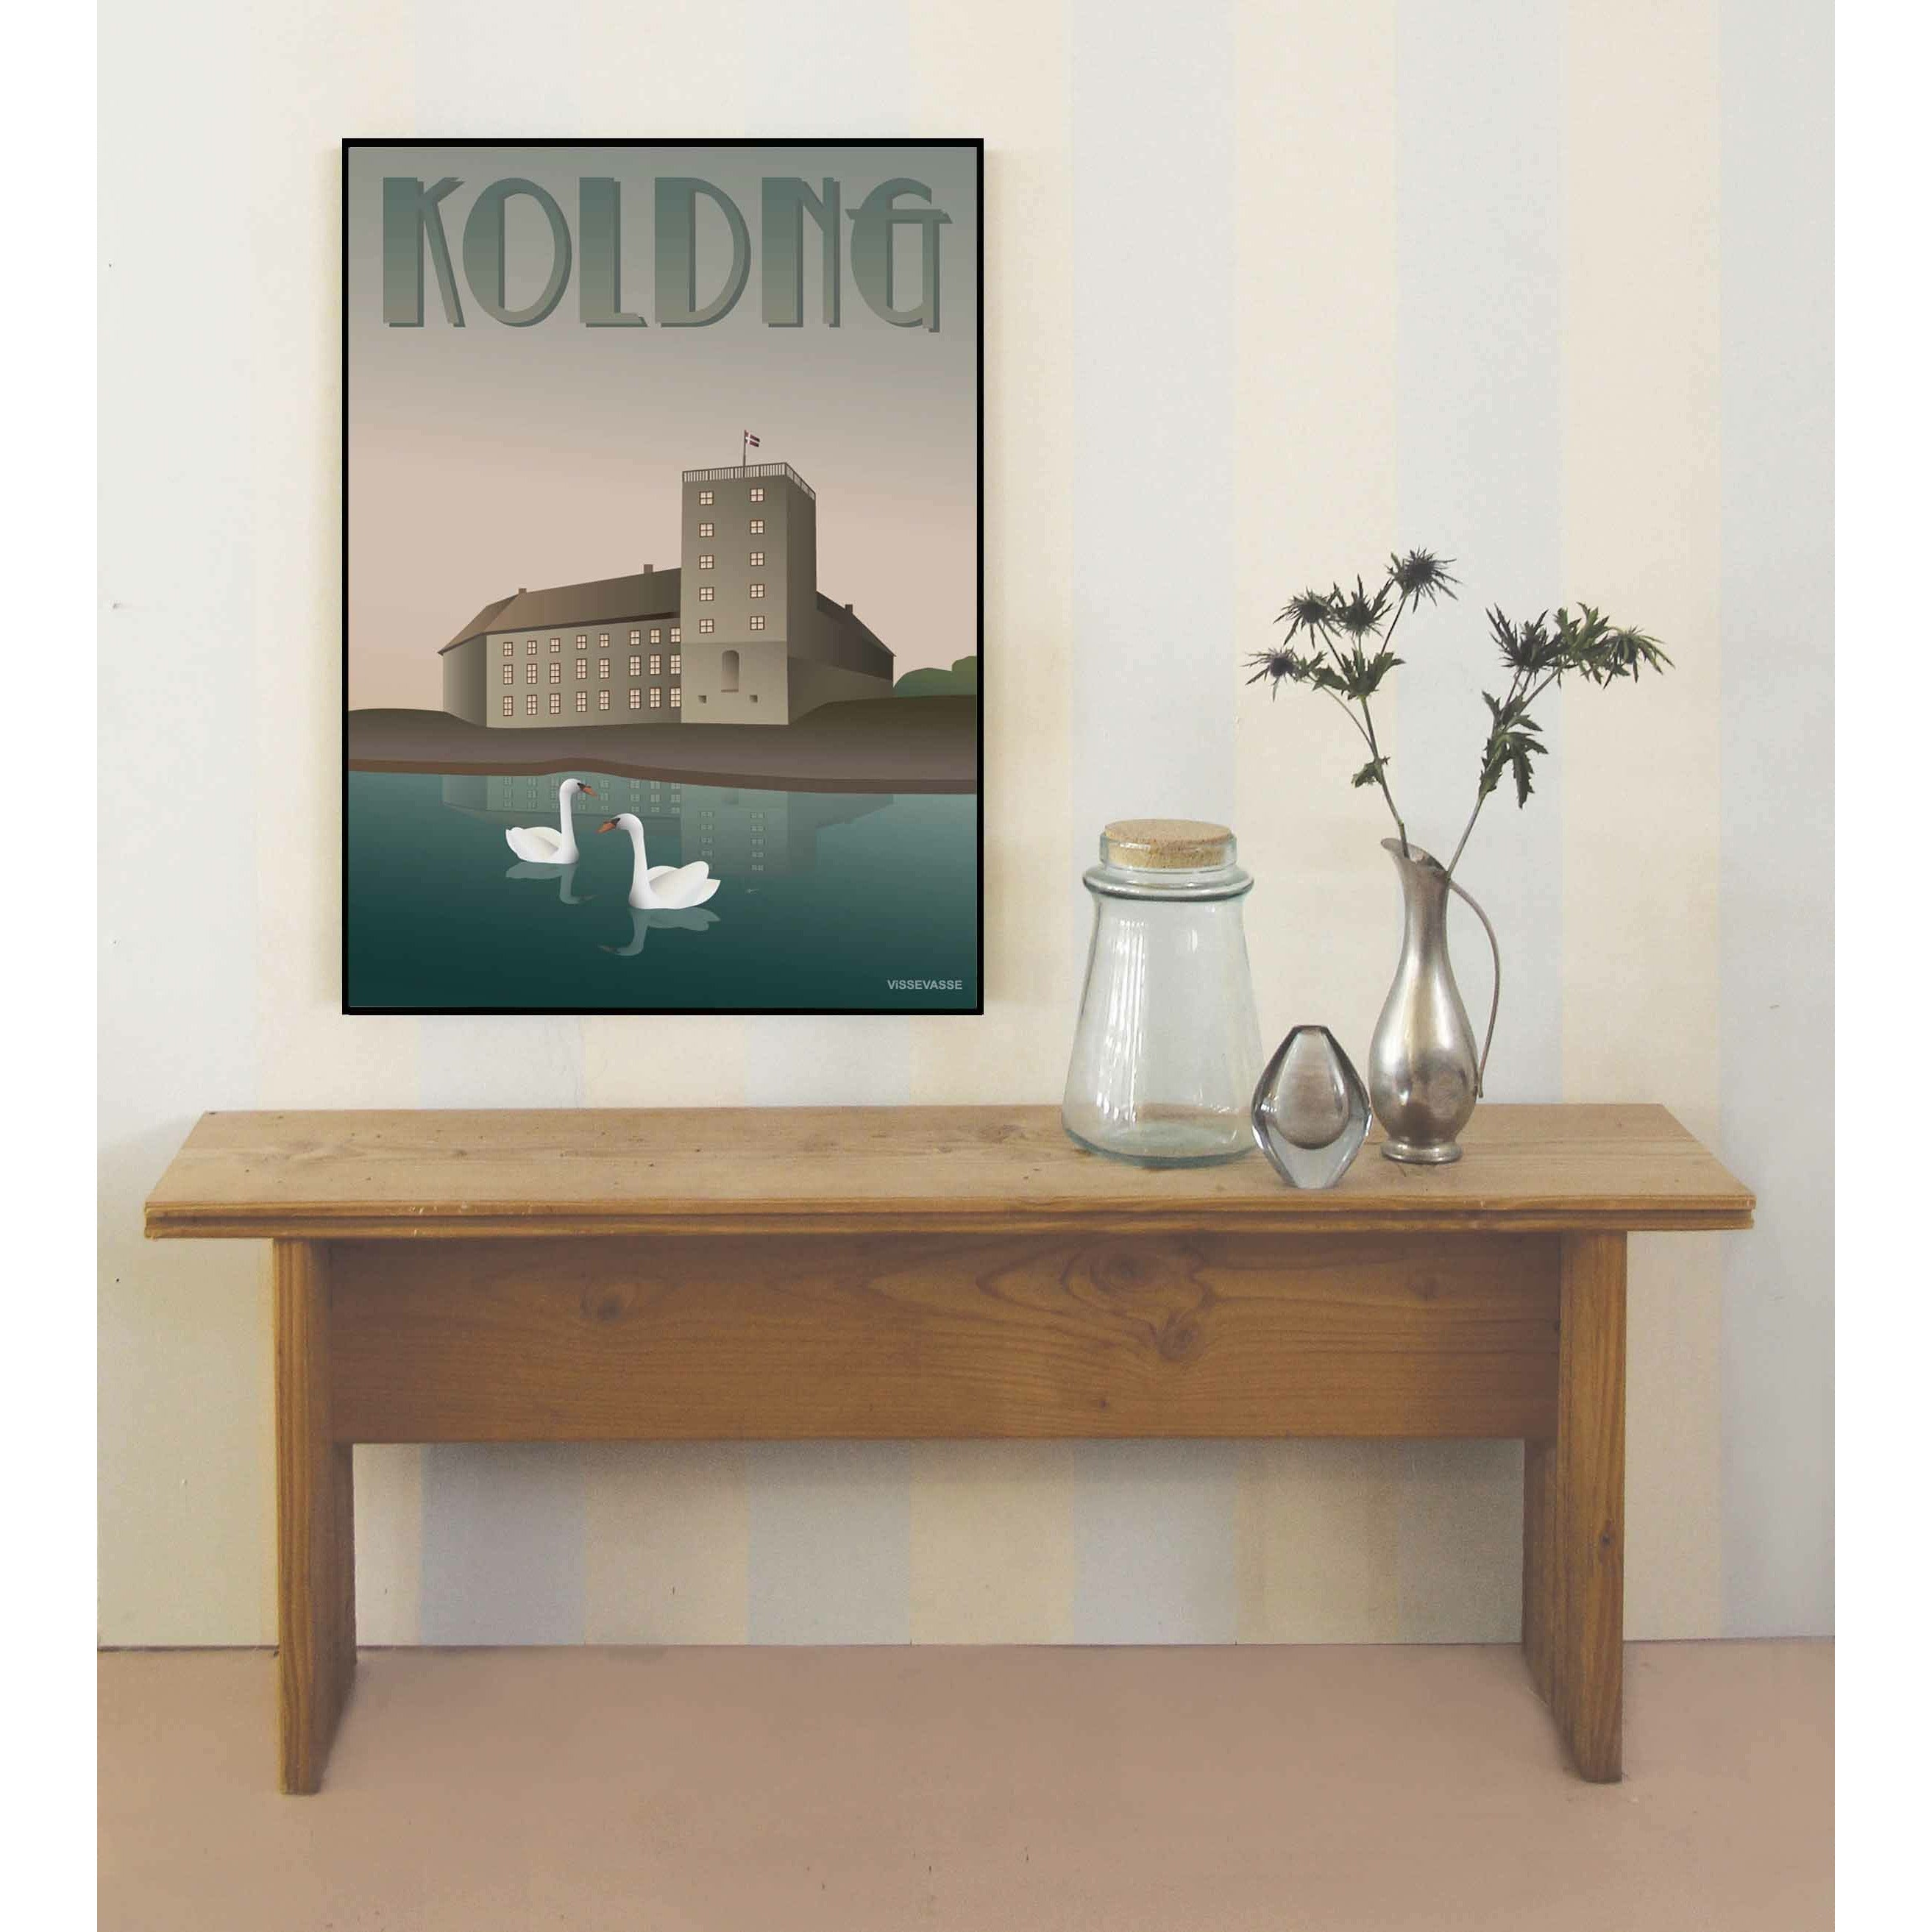 Vissevasse Kolding Koldinghaus Poster, 70 x 100 cm